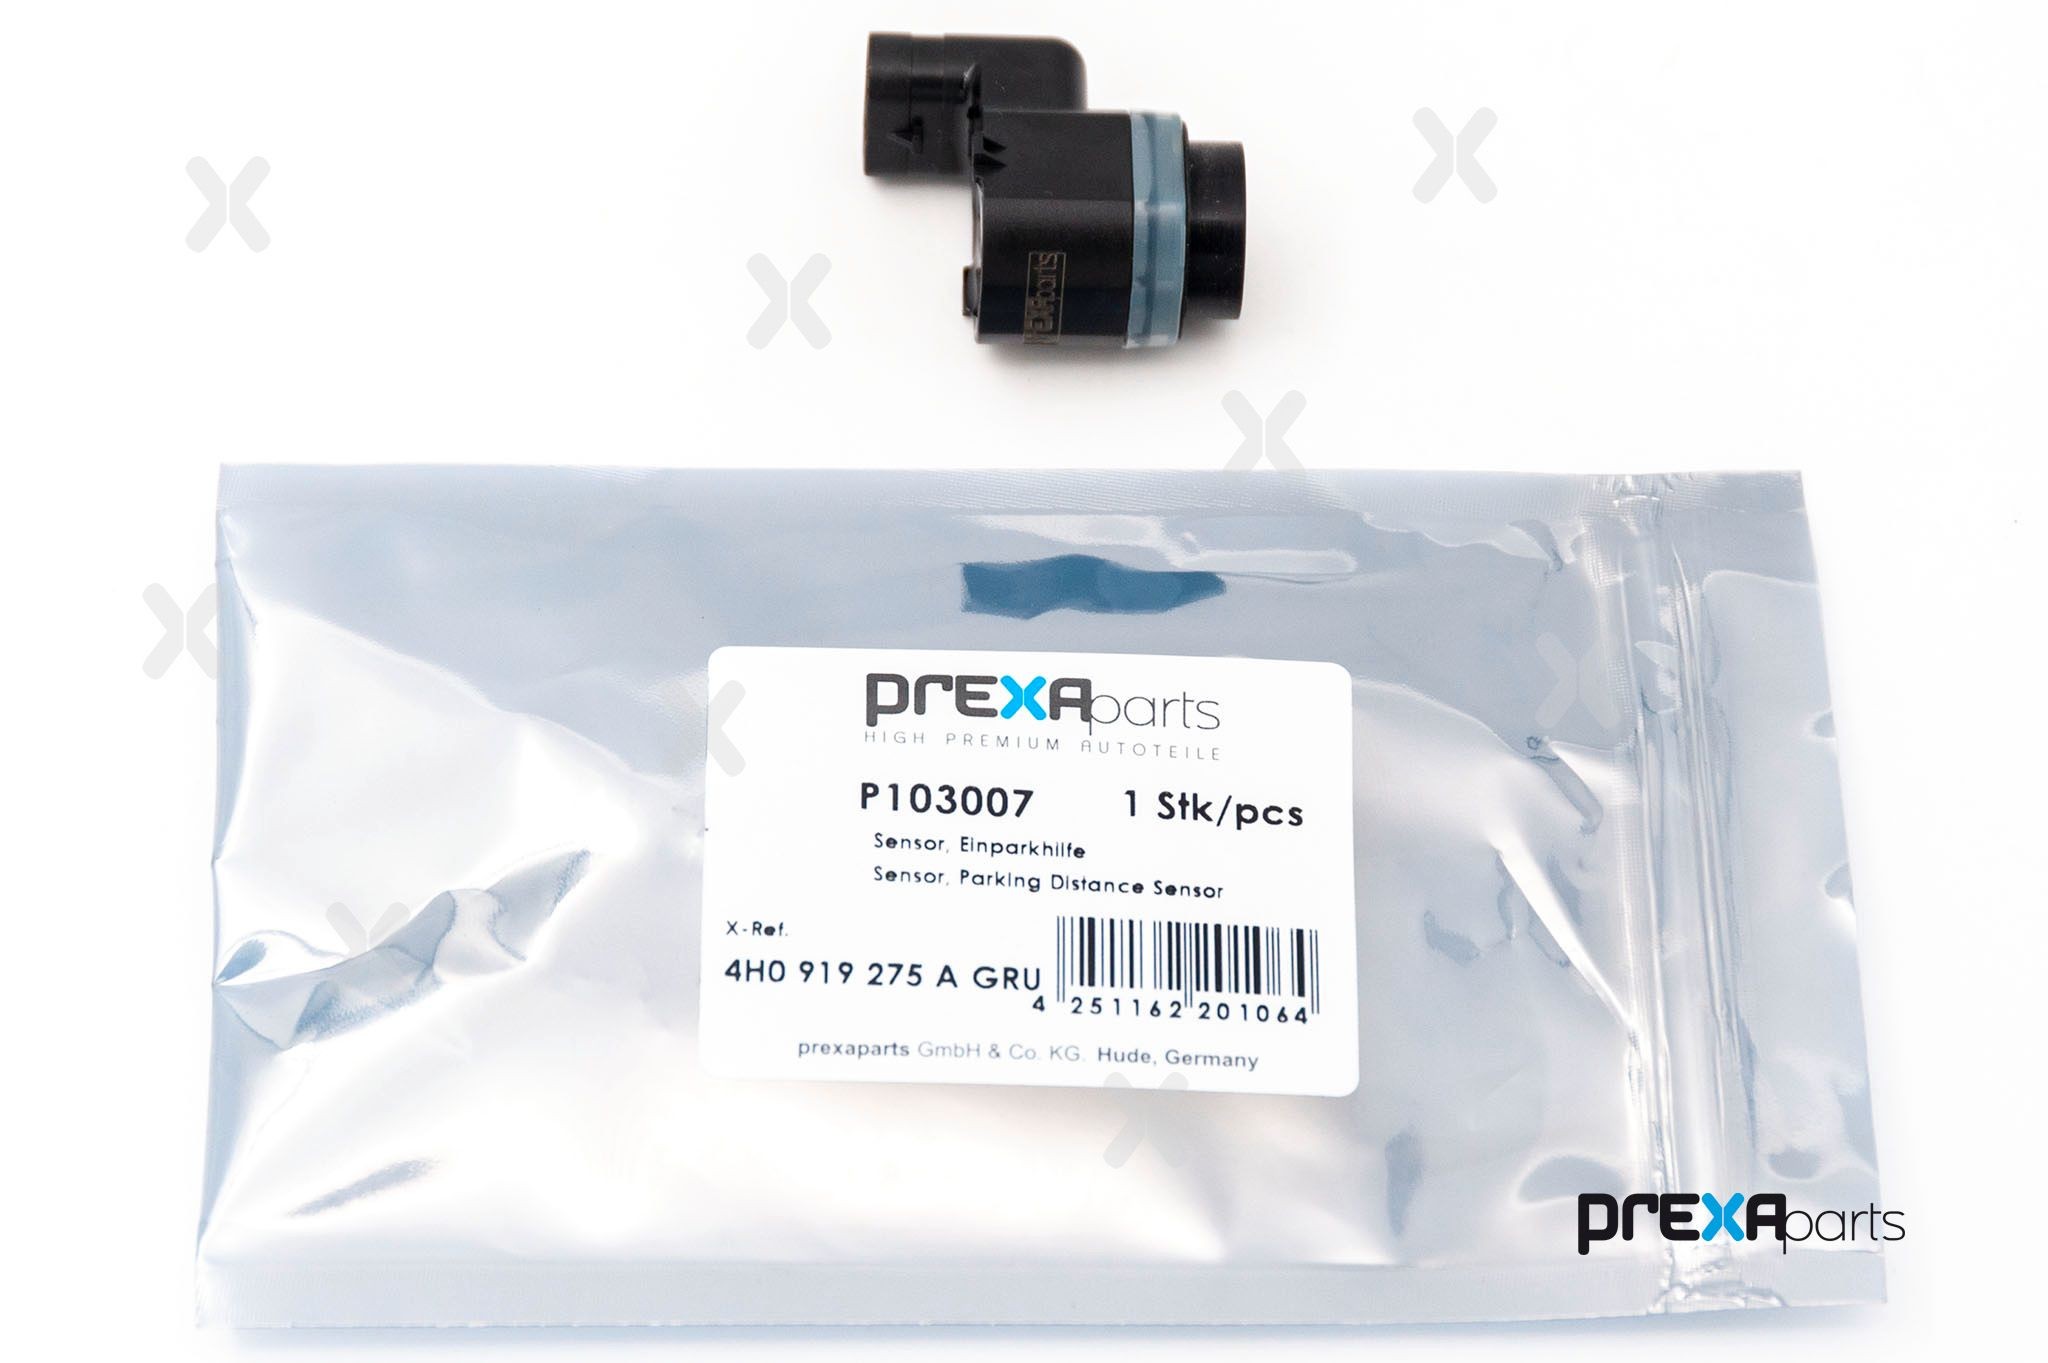 PDC Sensoren PREXAparts P103007 4251162201064